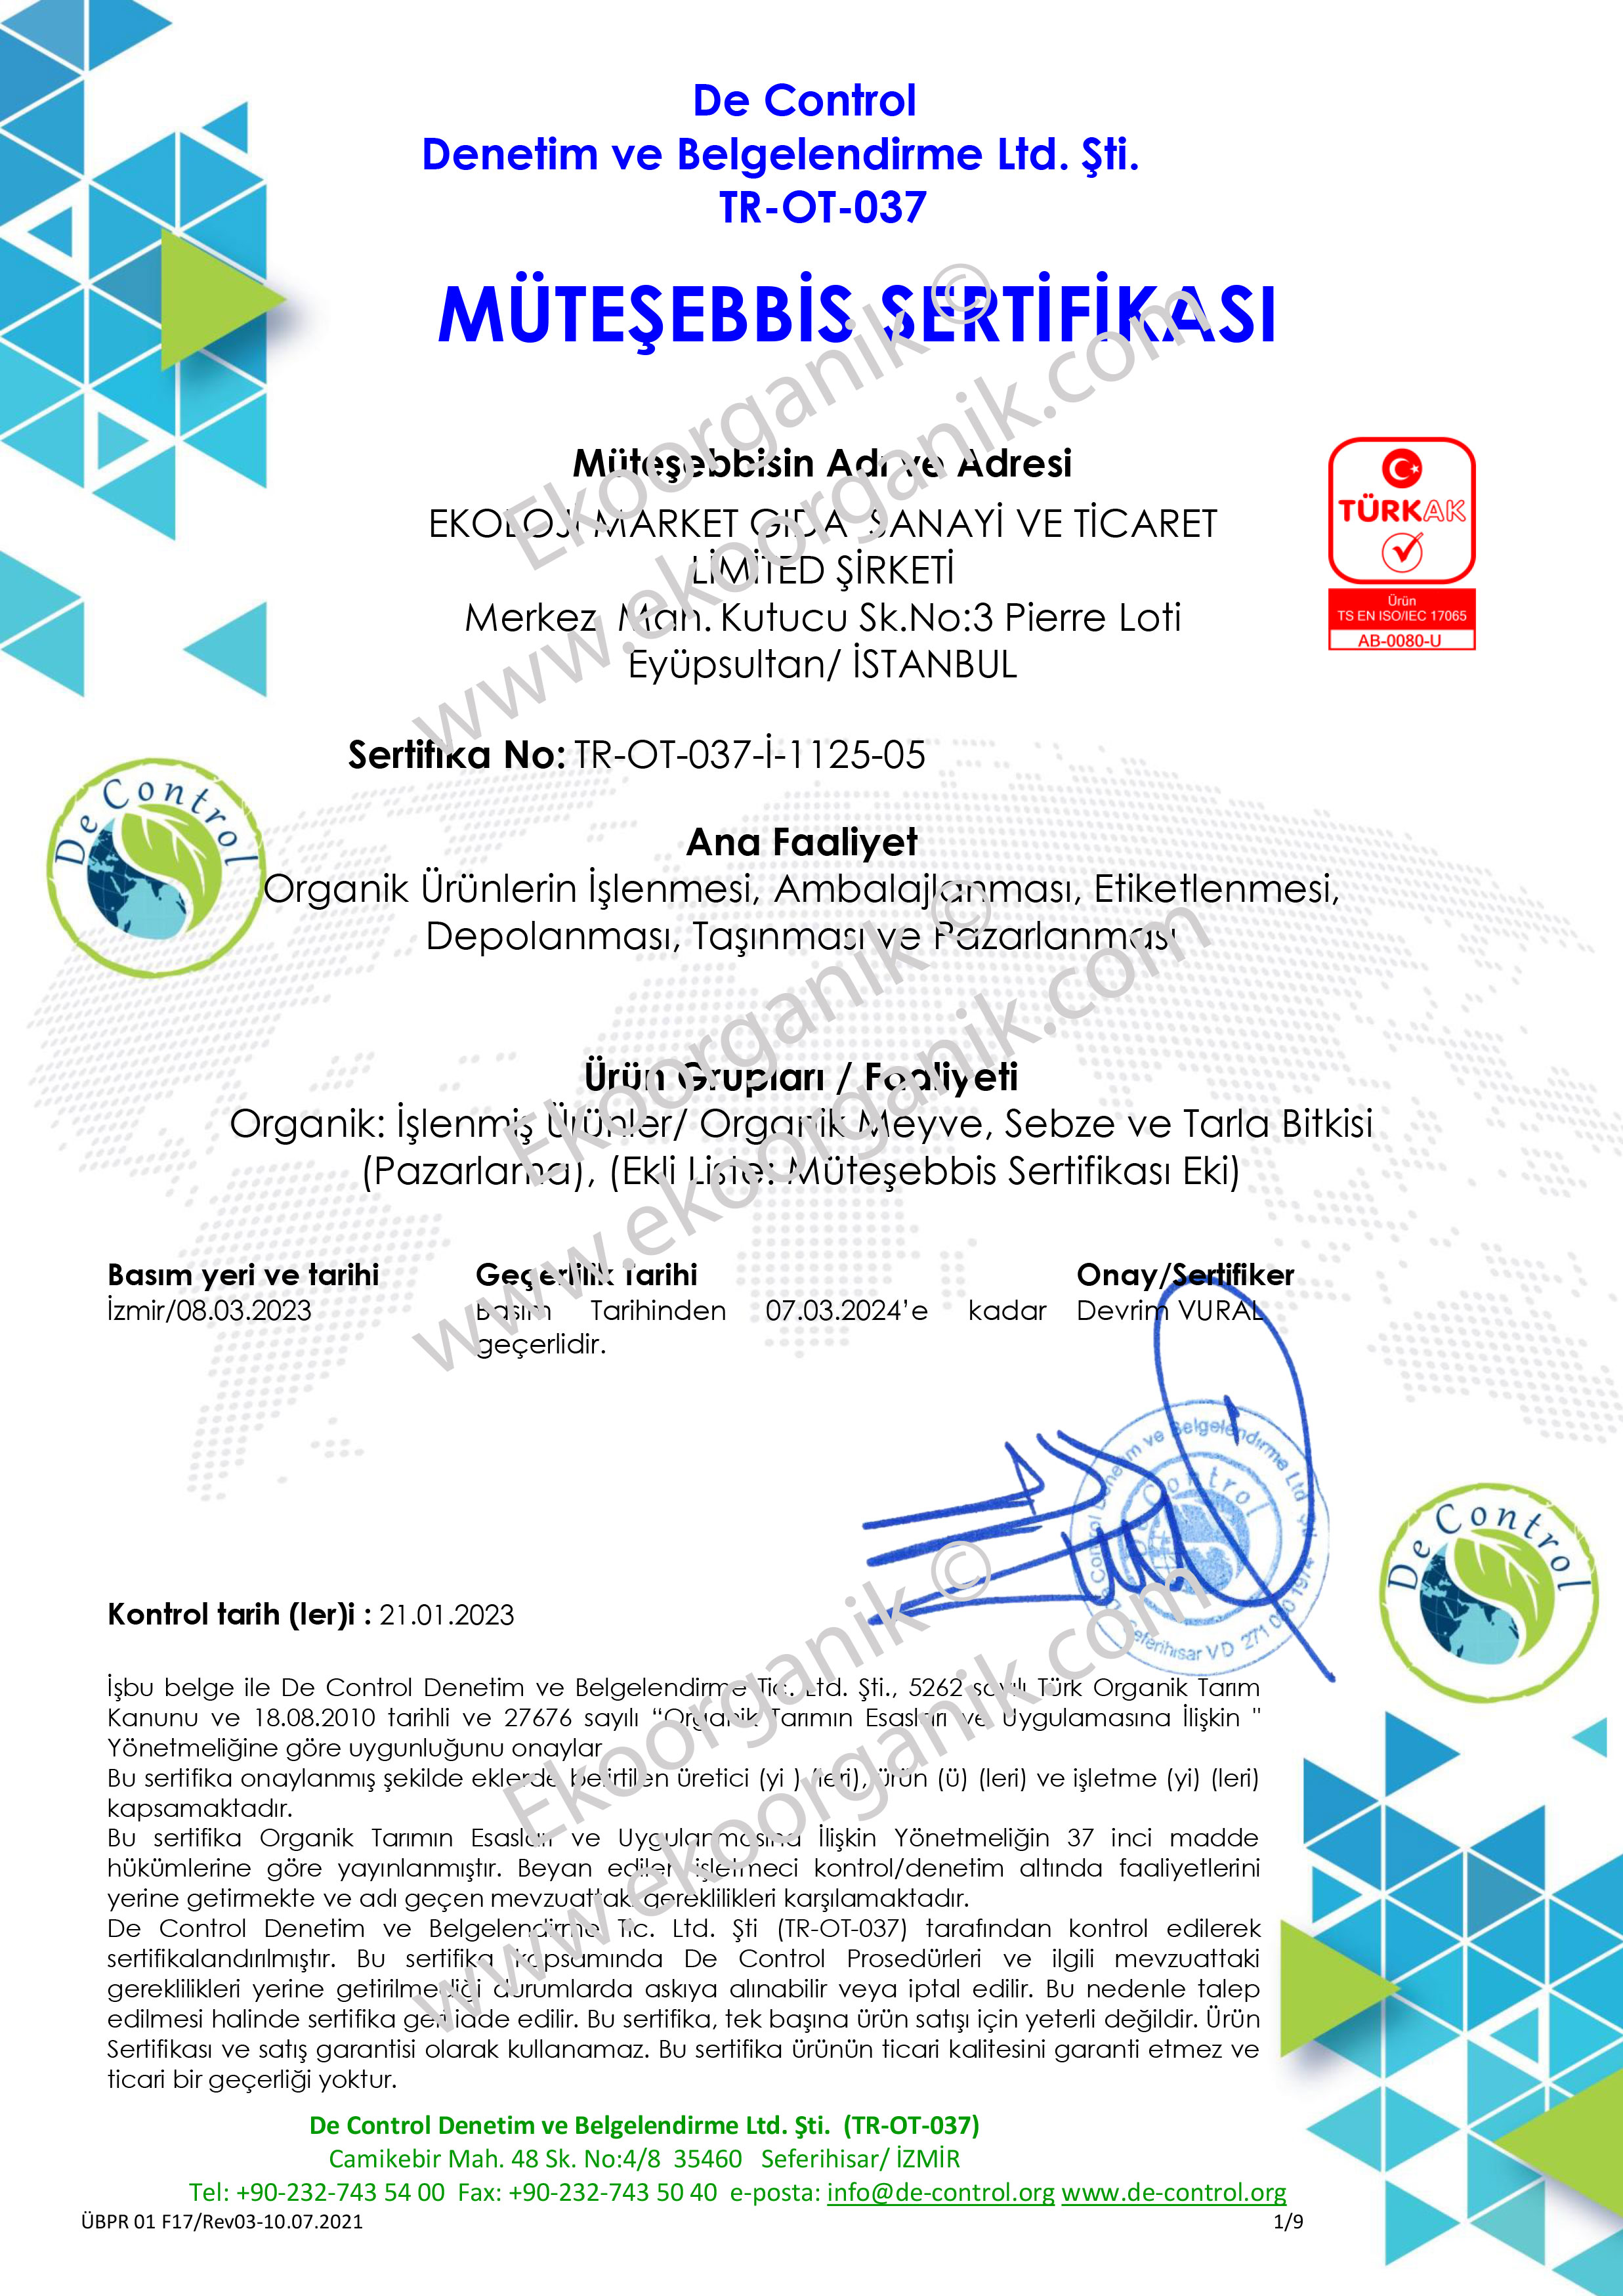 Ekoloji Market Organic Food and Agriculture De Control Certificate